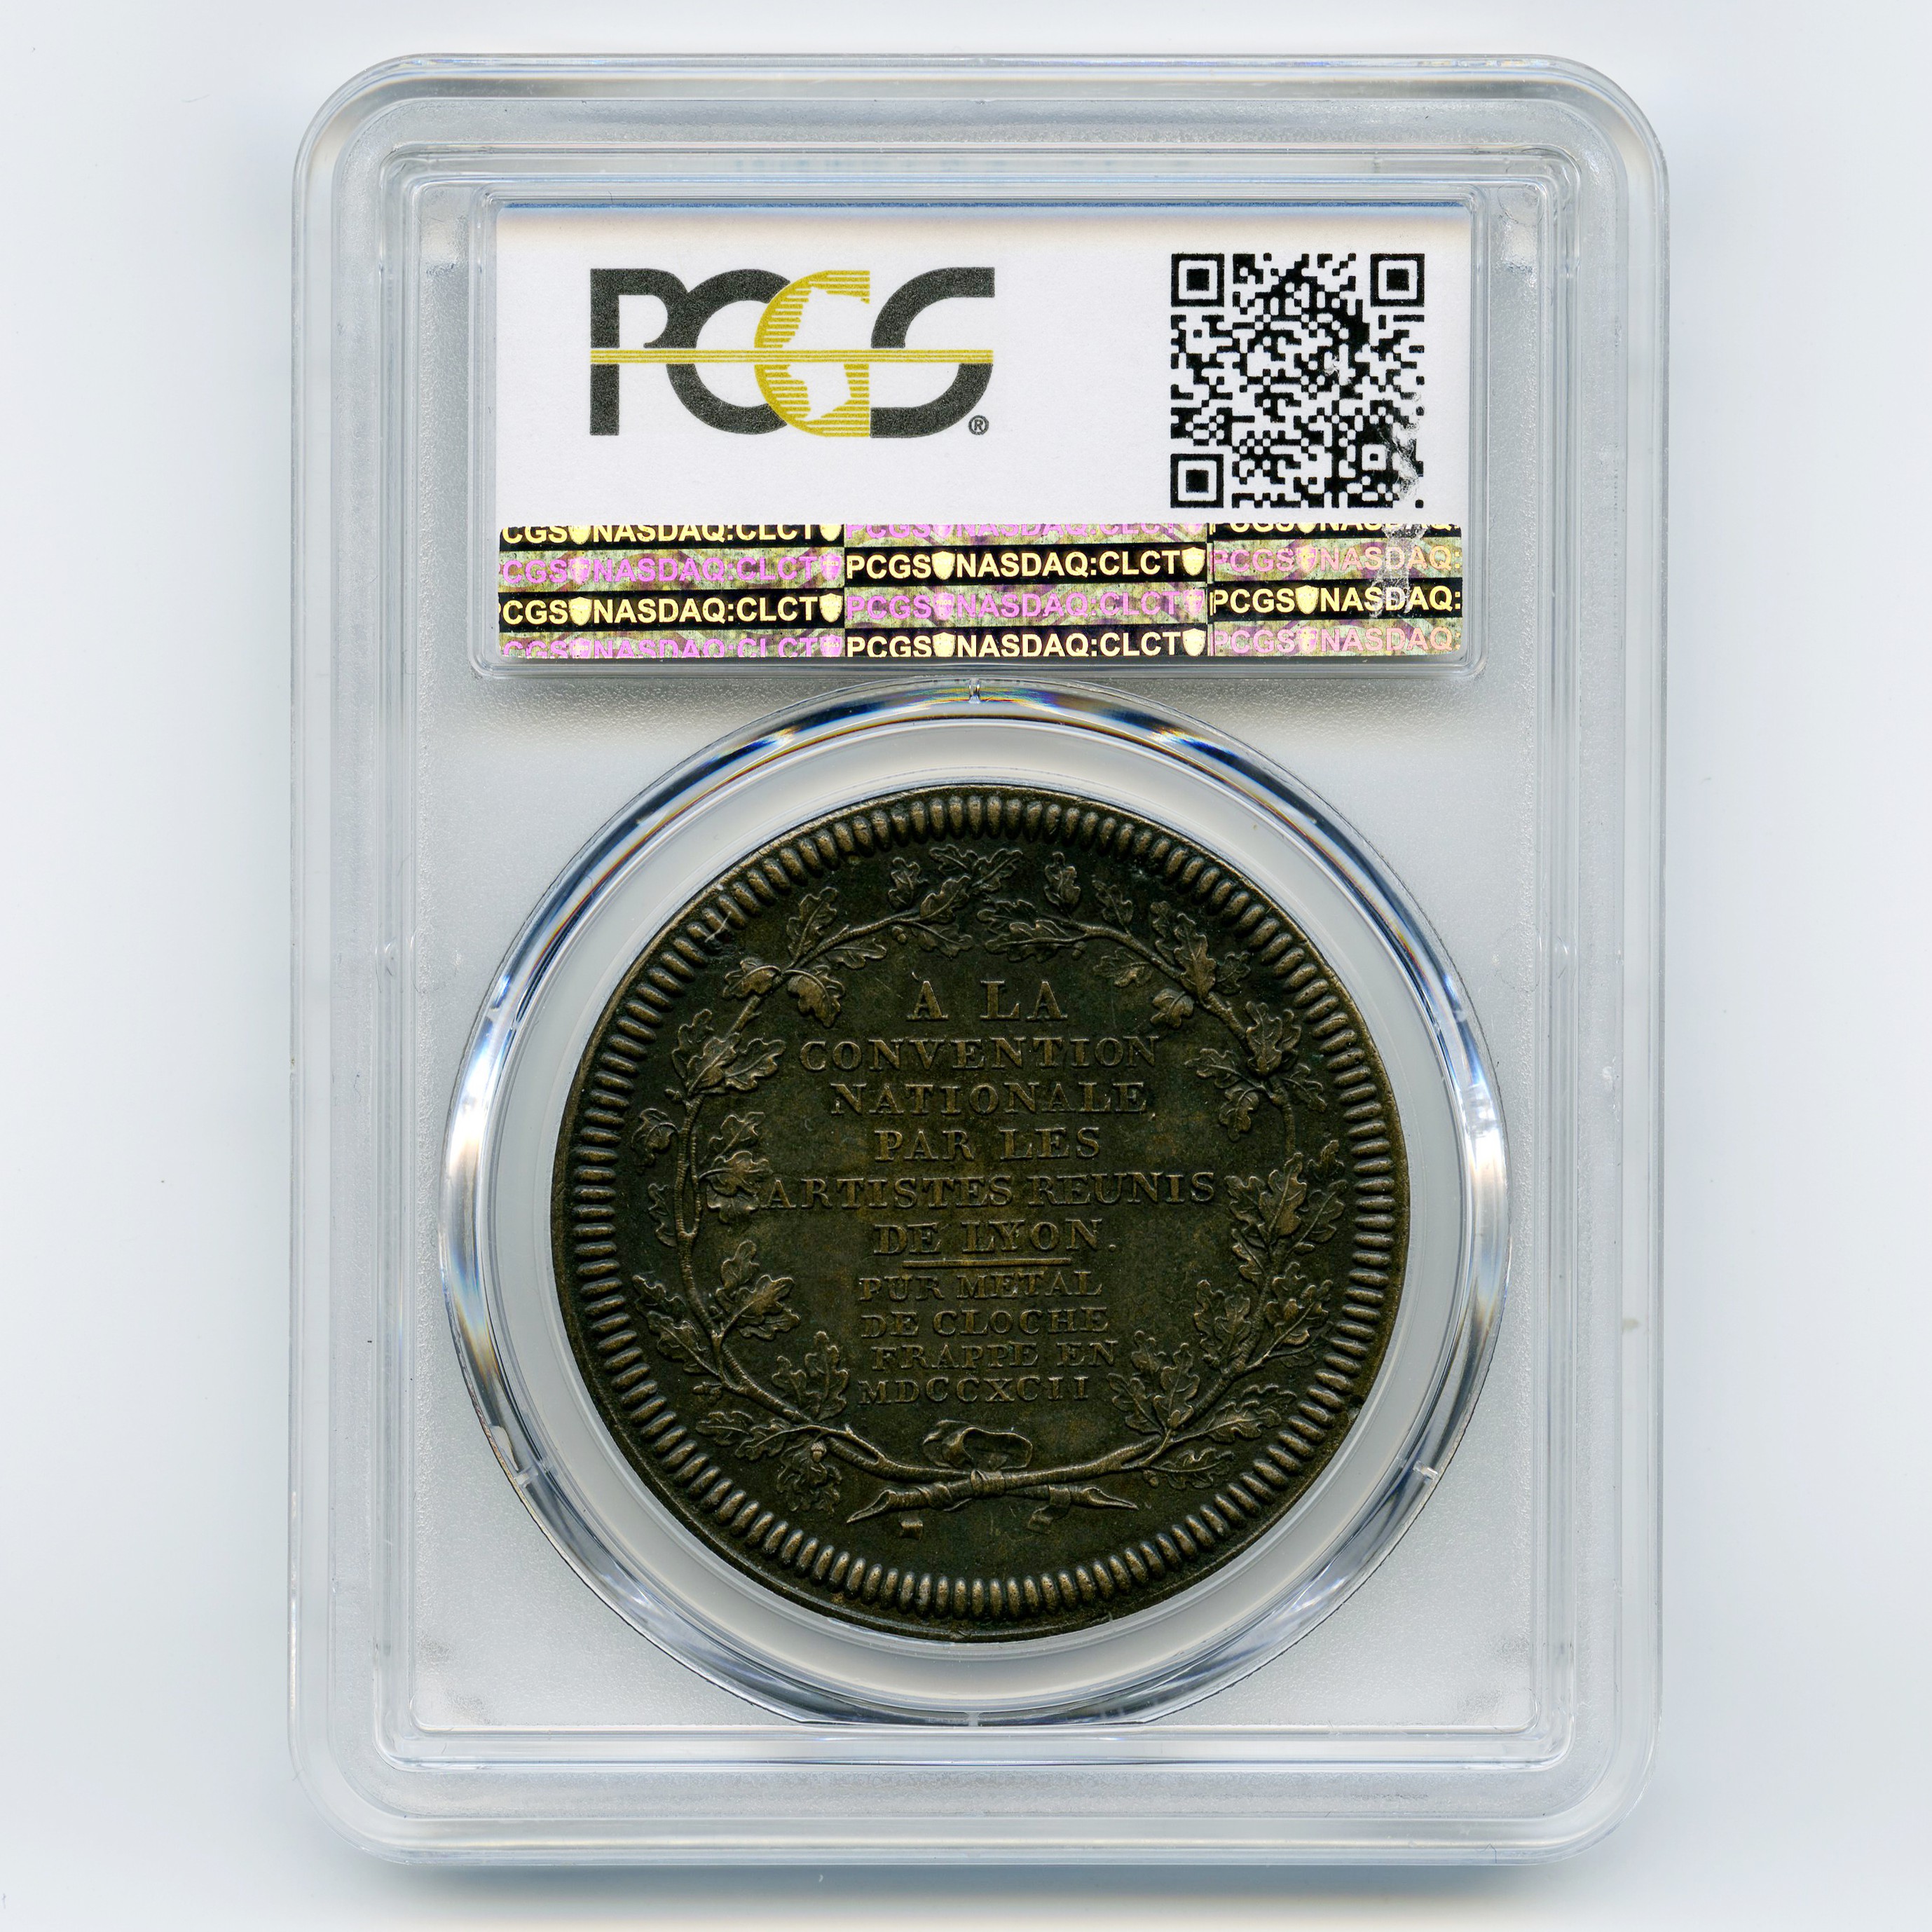 Convention - Médaille - 1792 revers